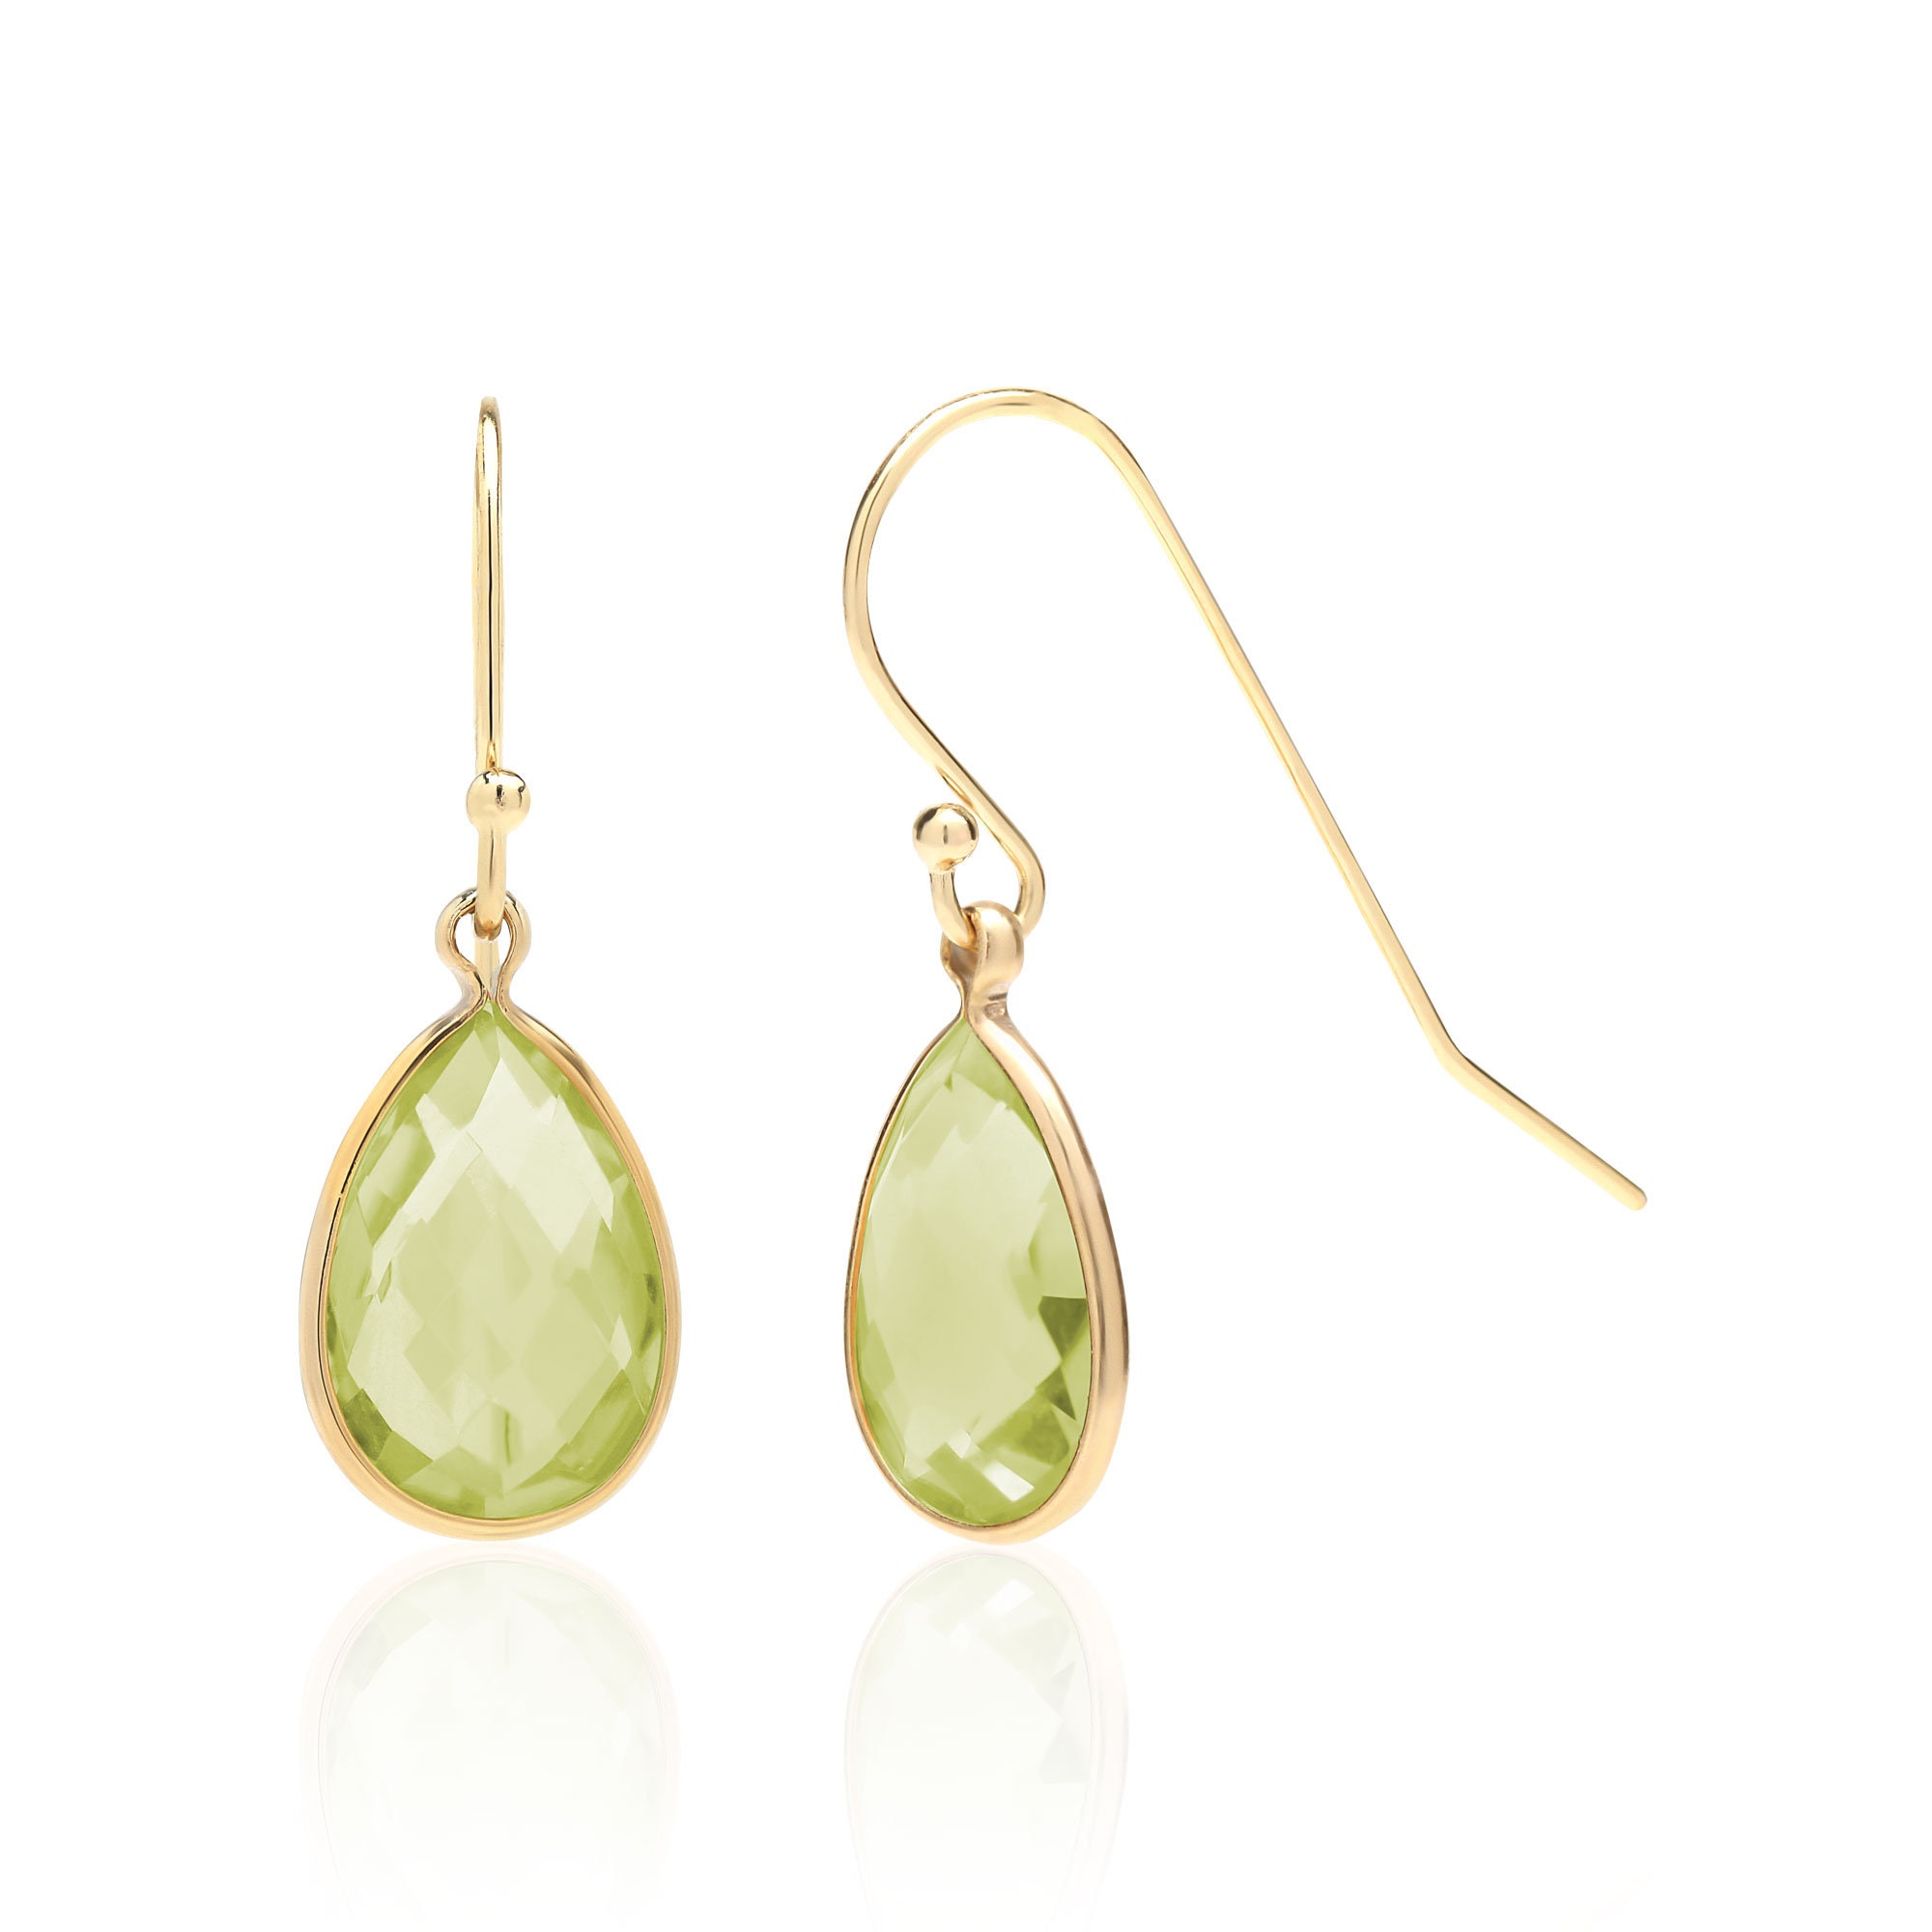 Green Amethyst Earrings in 14K Gold Filled or Sterling Silver | Etsy